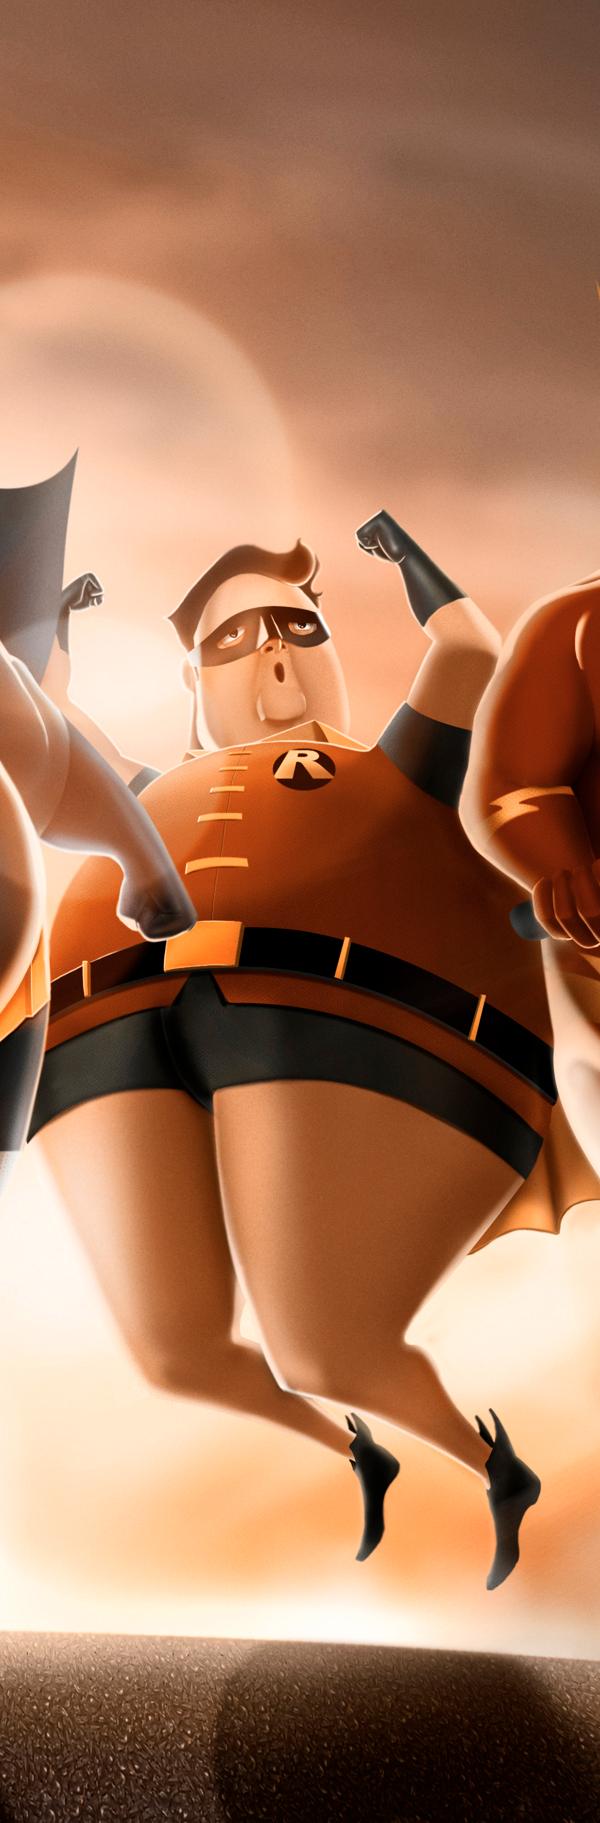 Super heróis gordos (1)